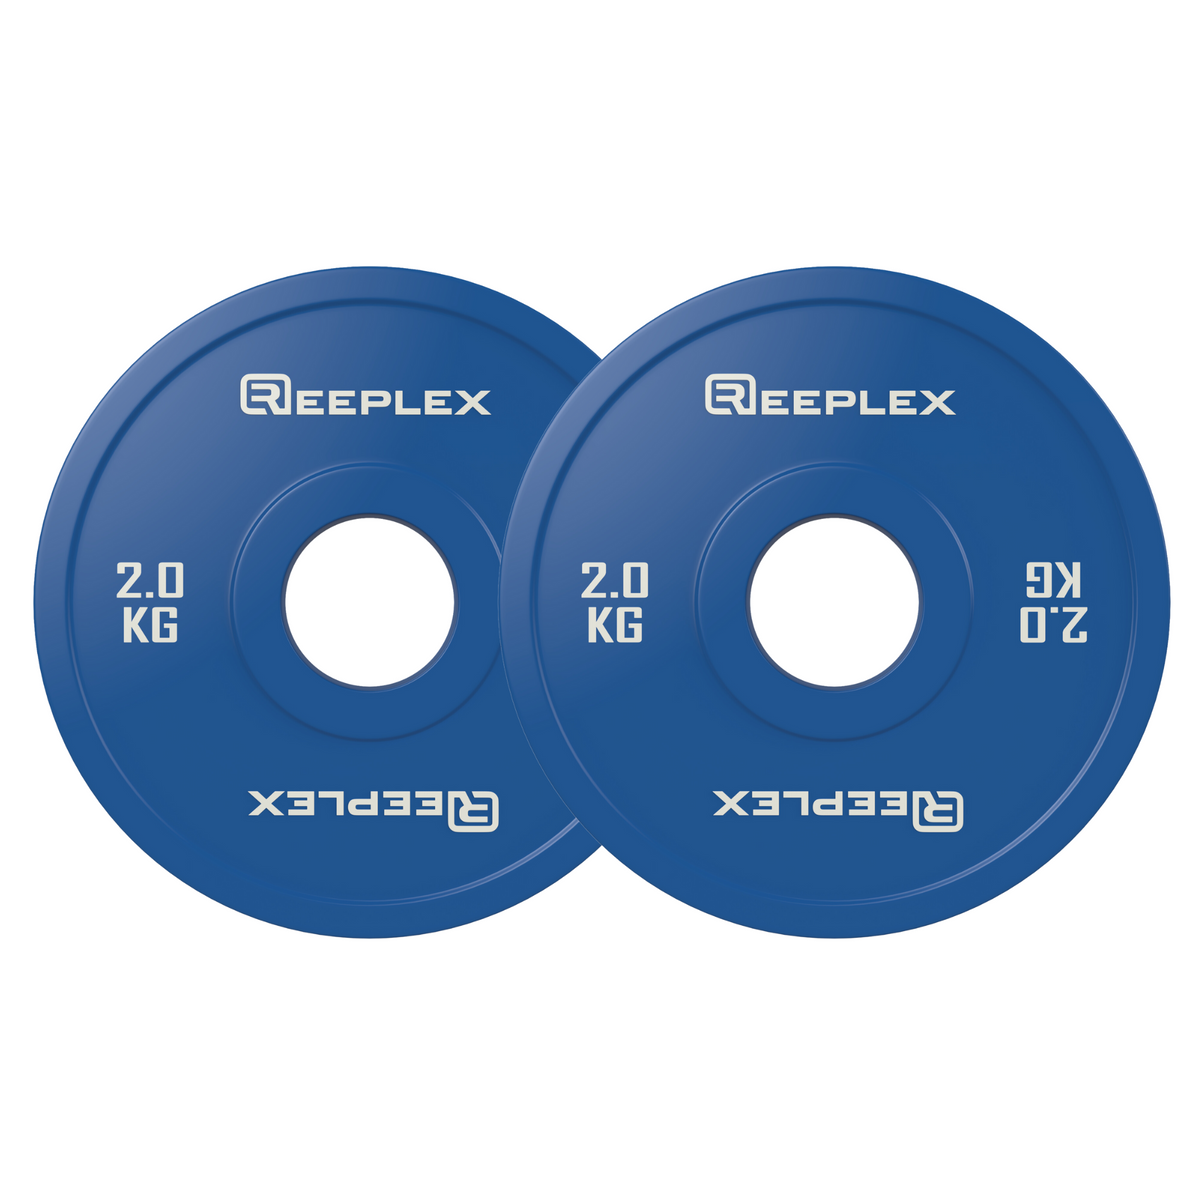 Reeplex 2kg Fractional Weight Plate Pair